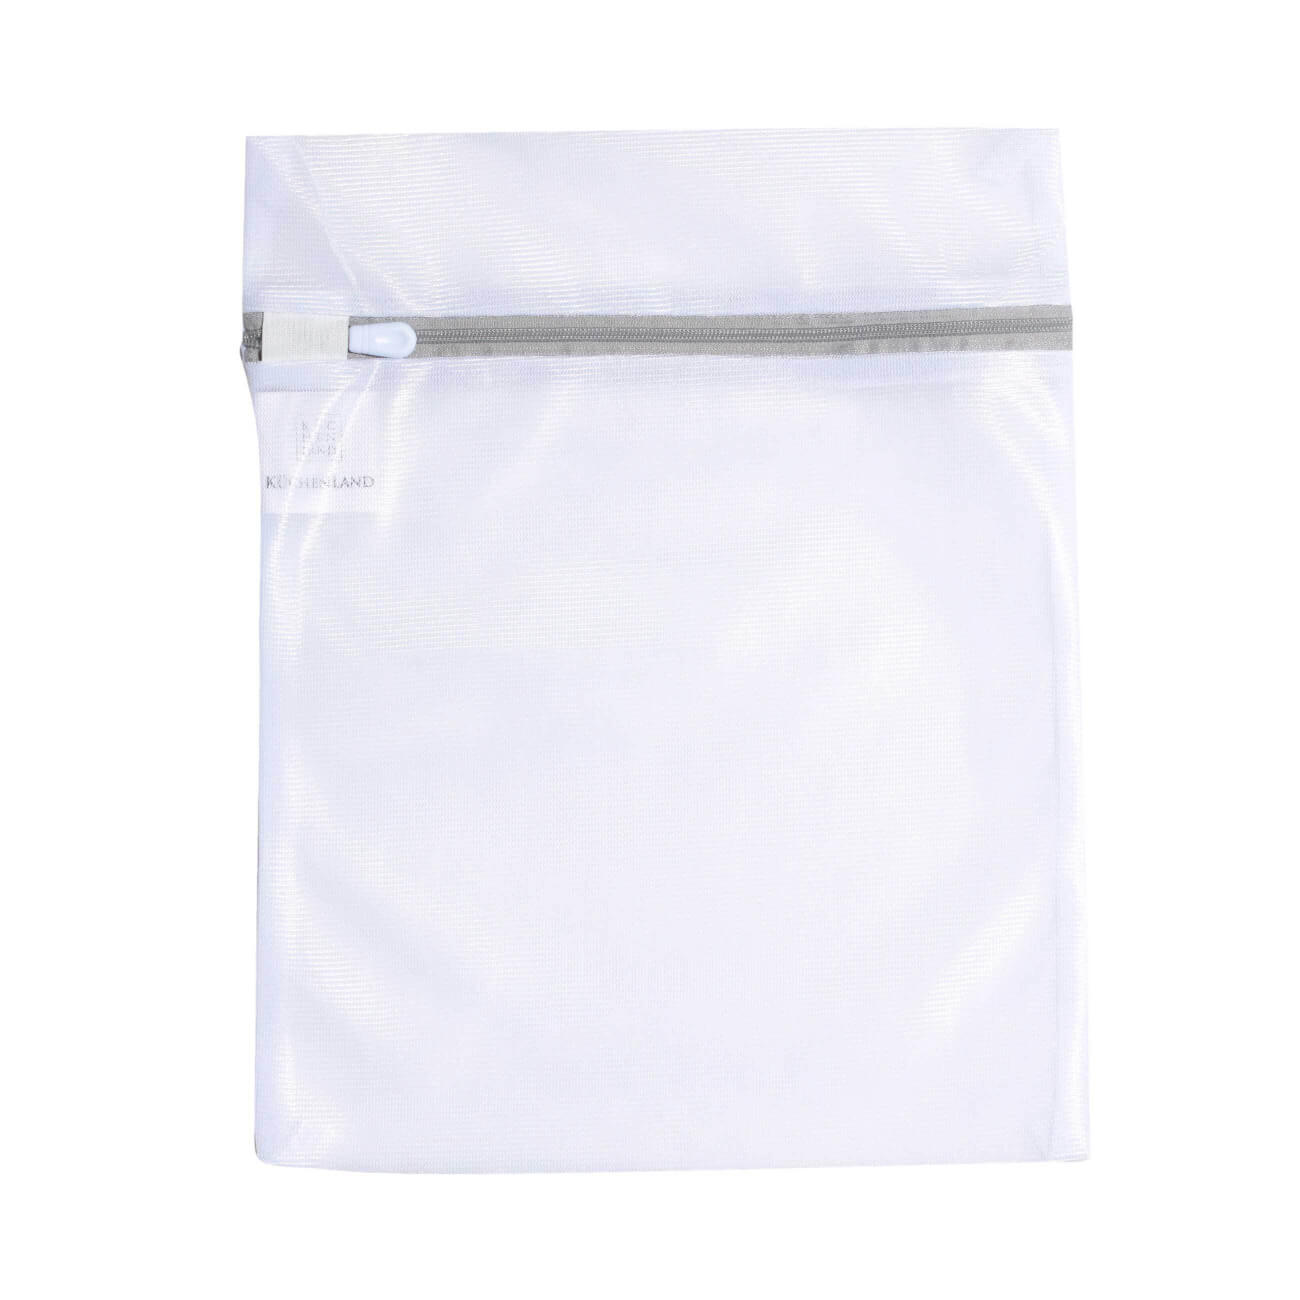 мешок для стирки нижнего белья 38 см полиэстер safety plus Мешок для стирки нижнего белья, 25х30 см, полиэстер, бело-серый, Safety plus